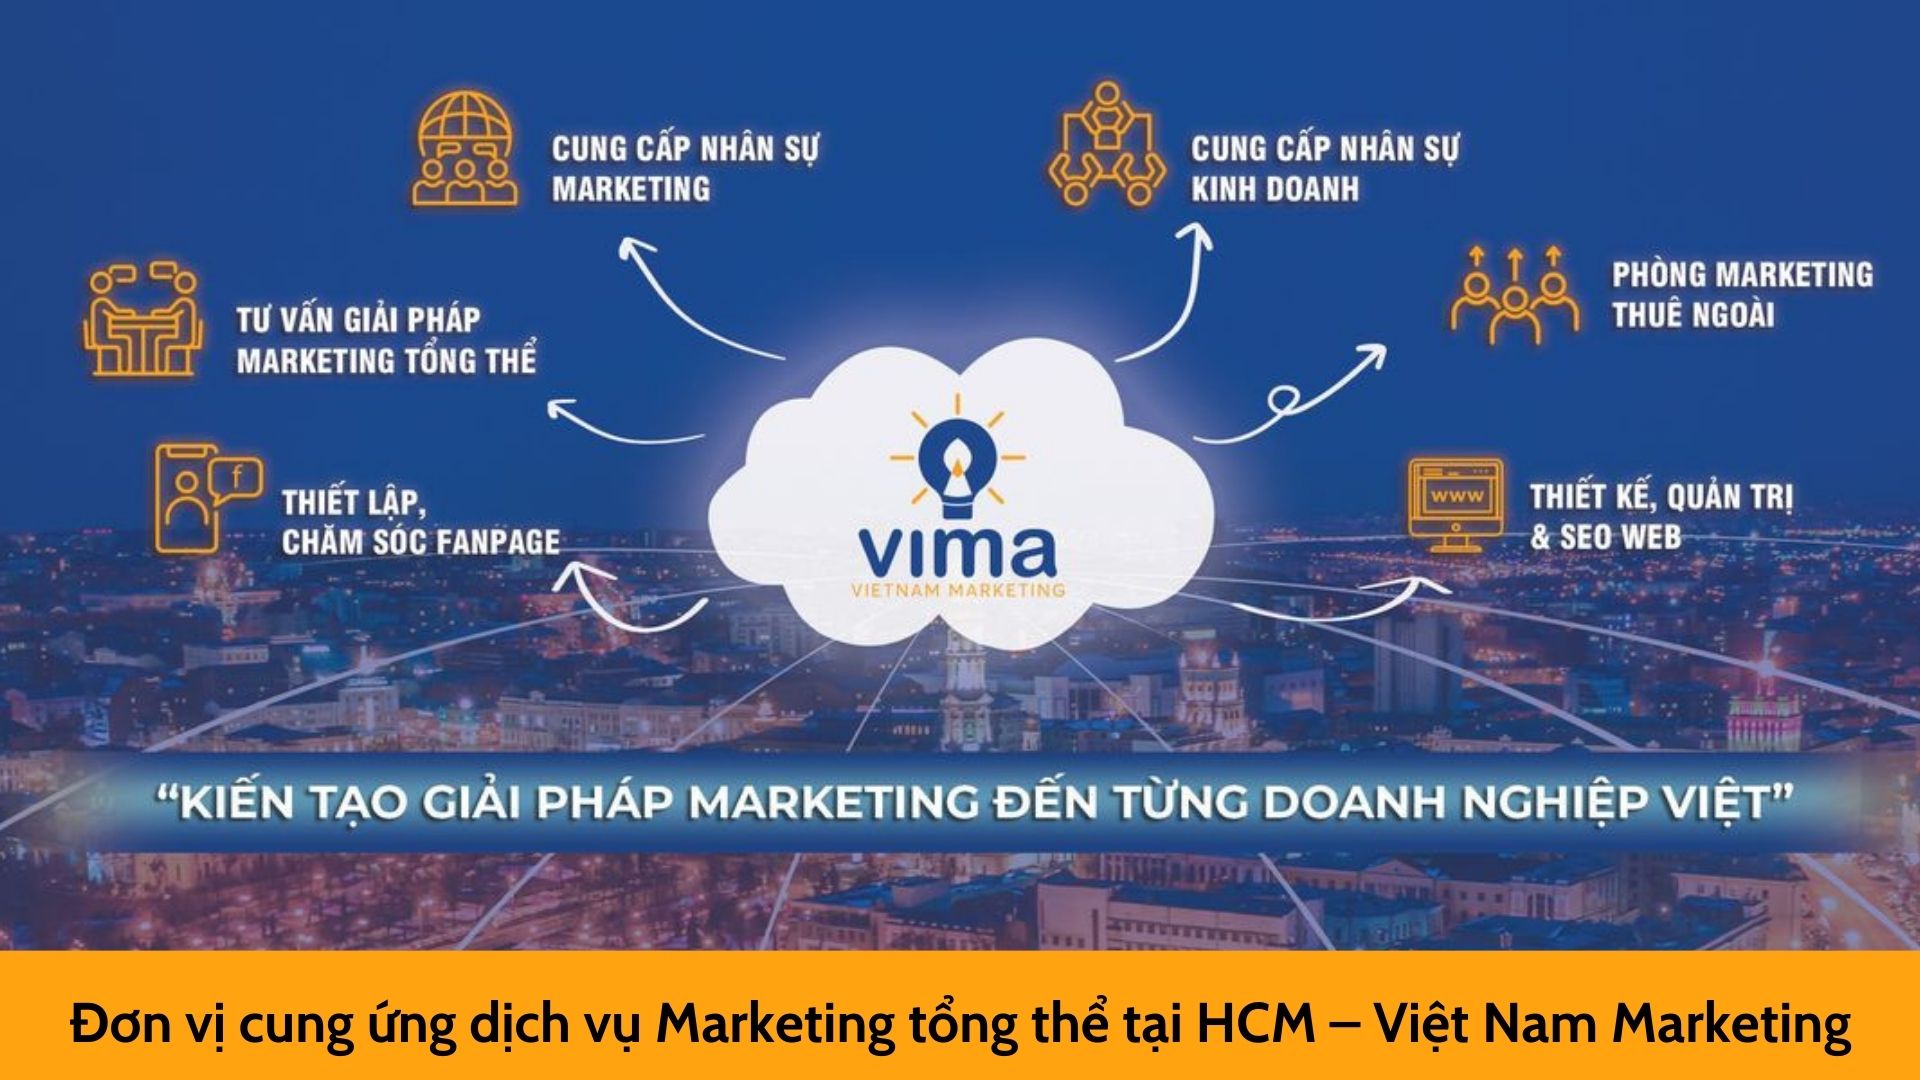 Đơn vị cung ứng dịch vụ Marketing tổng thể tại HCM – Việt Nam Marketing